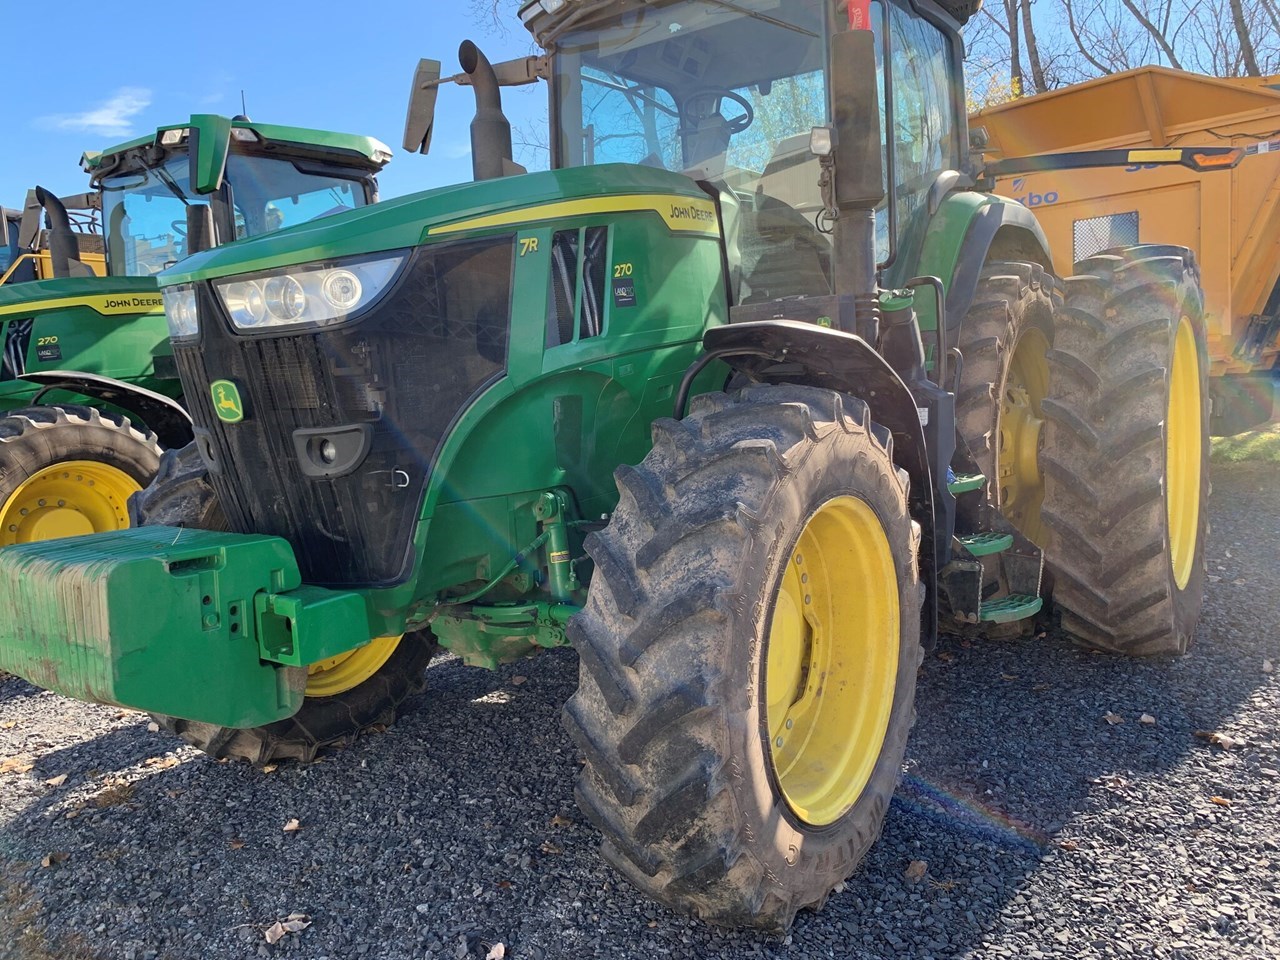 2020 John Deere 7R 270 Tractor - Row Crop For Sale